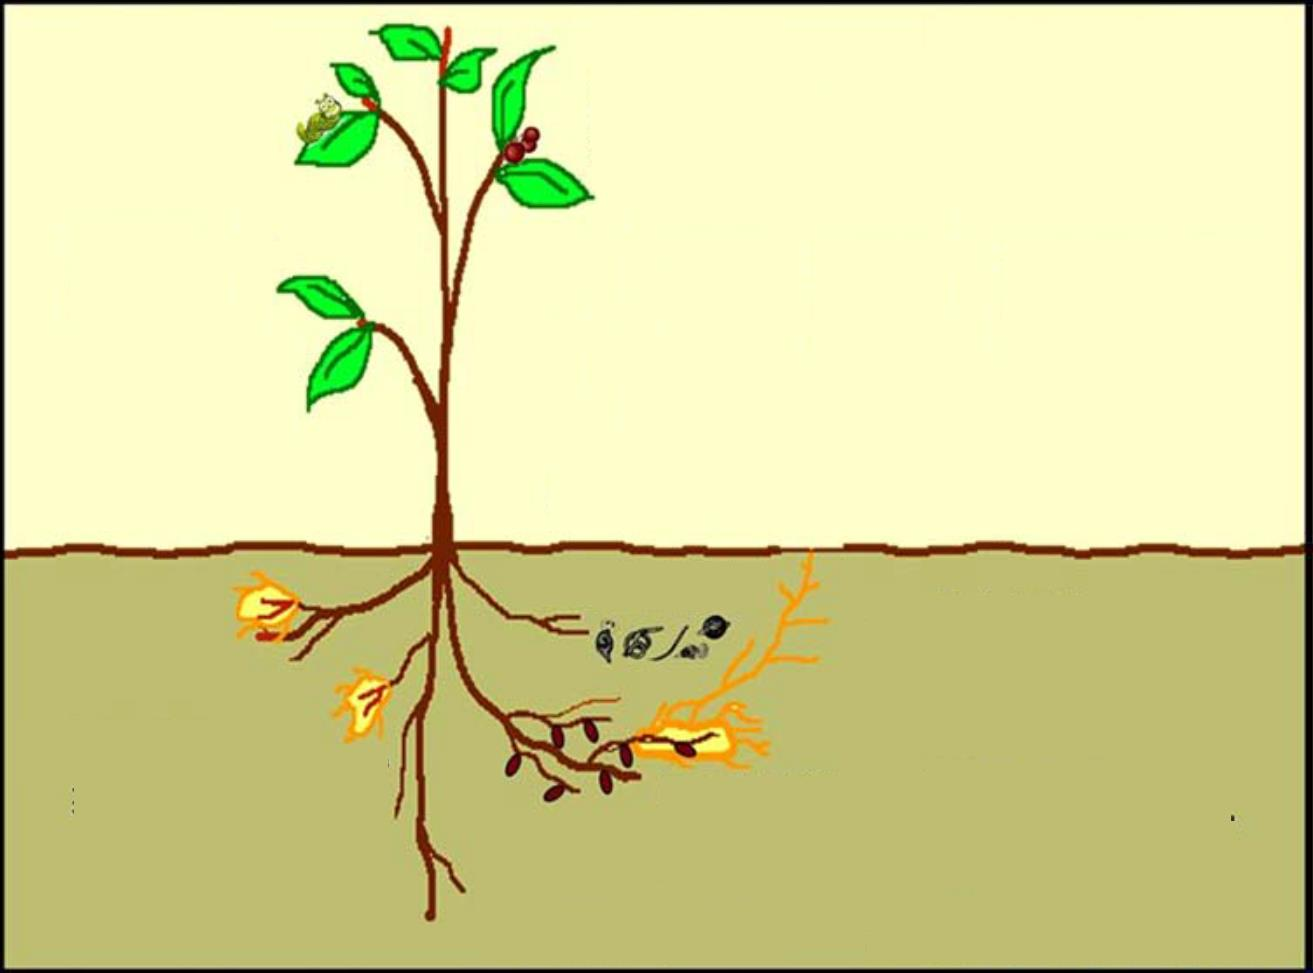 Az Ascophyllum nodosum hatása Kezelés Hatás Lombkezelés Növekedés 1. Elősegíti a hajtás és gyökér növekedését 2. Intenzívebb virágzás, terméskötődés 3. Magasabb hozamok Erősebb stressztolerancia 1.